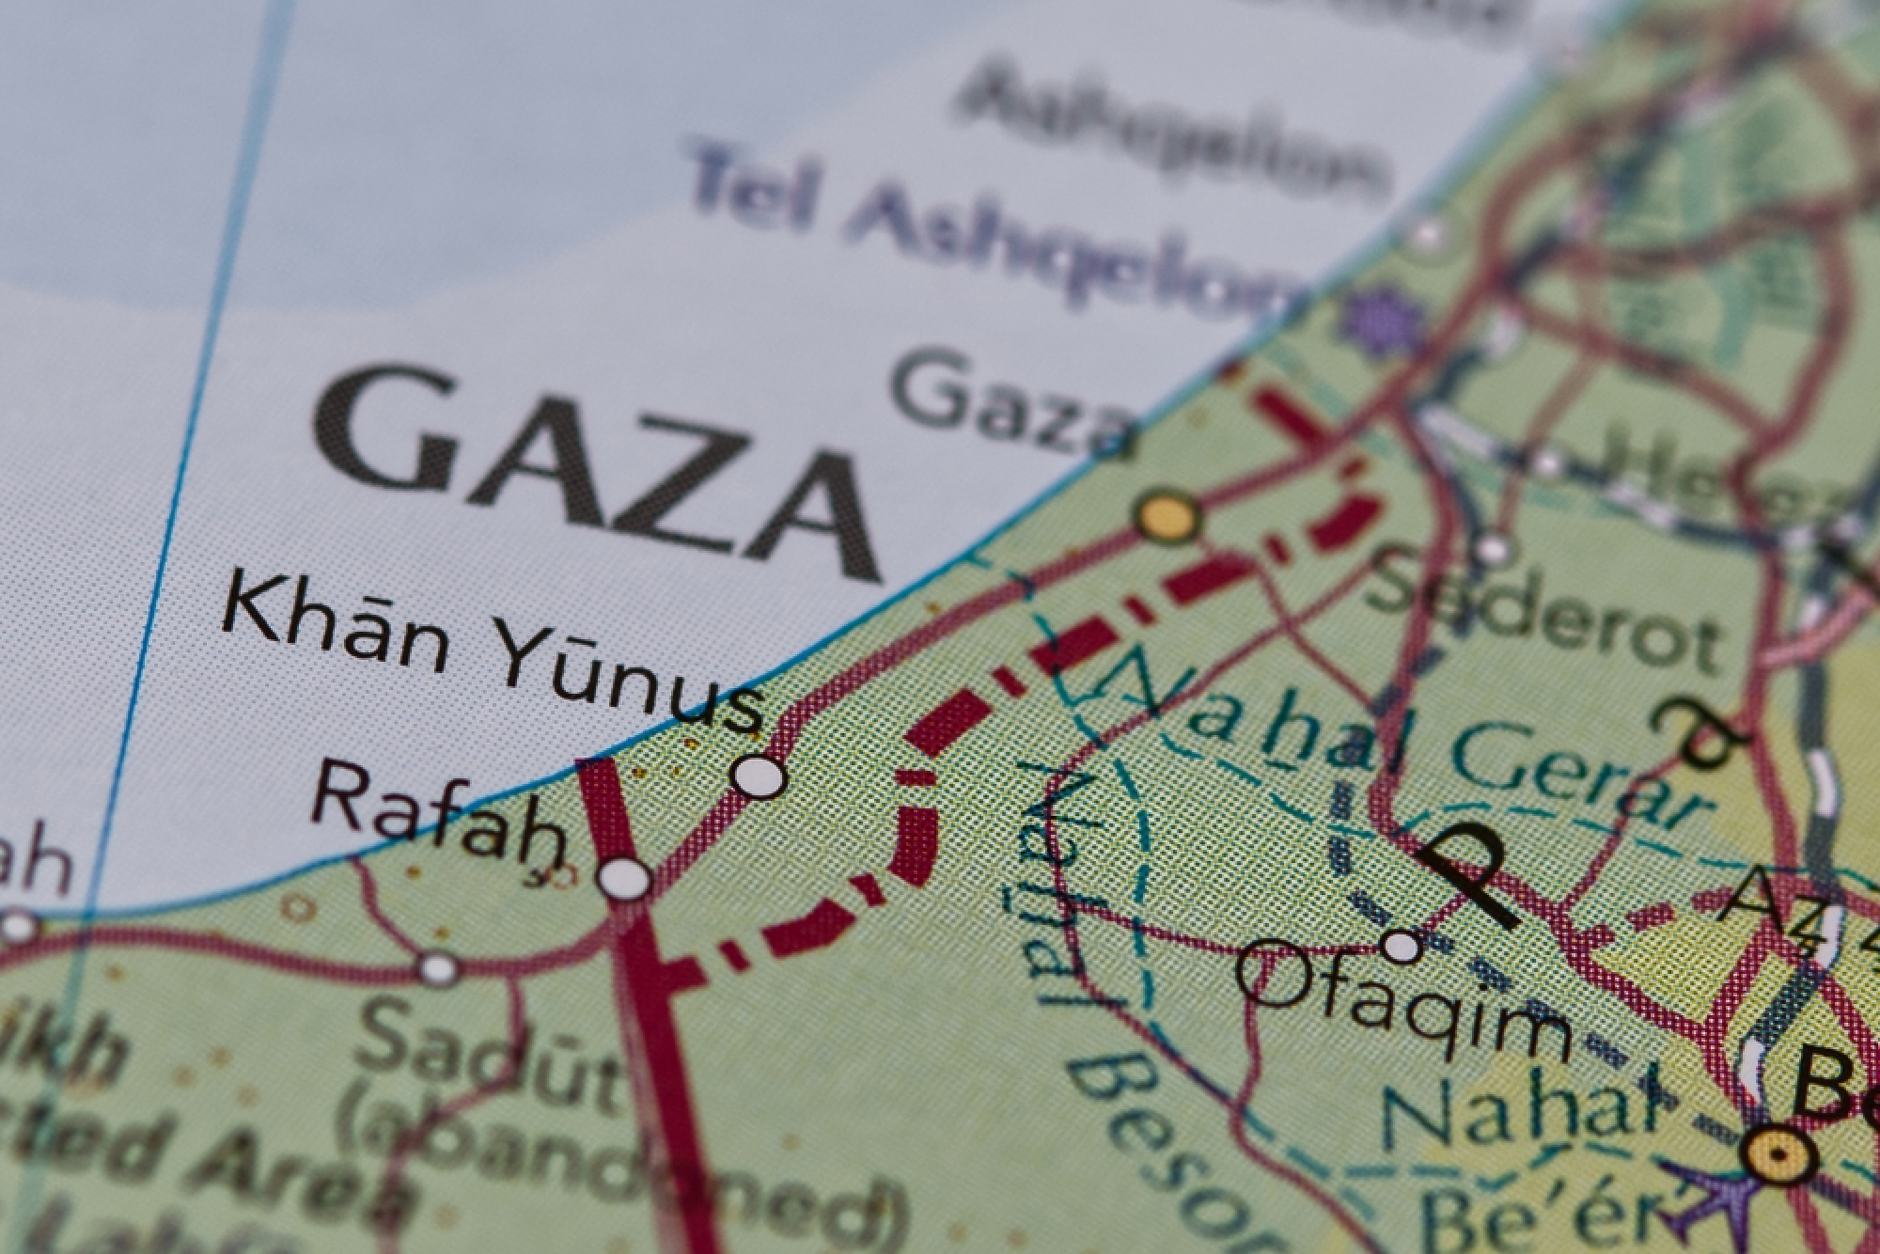  Как плановете за „деня след това“ могат да помогнат за спиране на боевете в Газа?